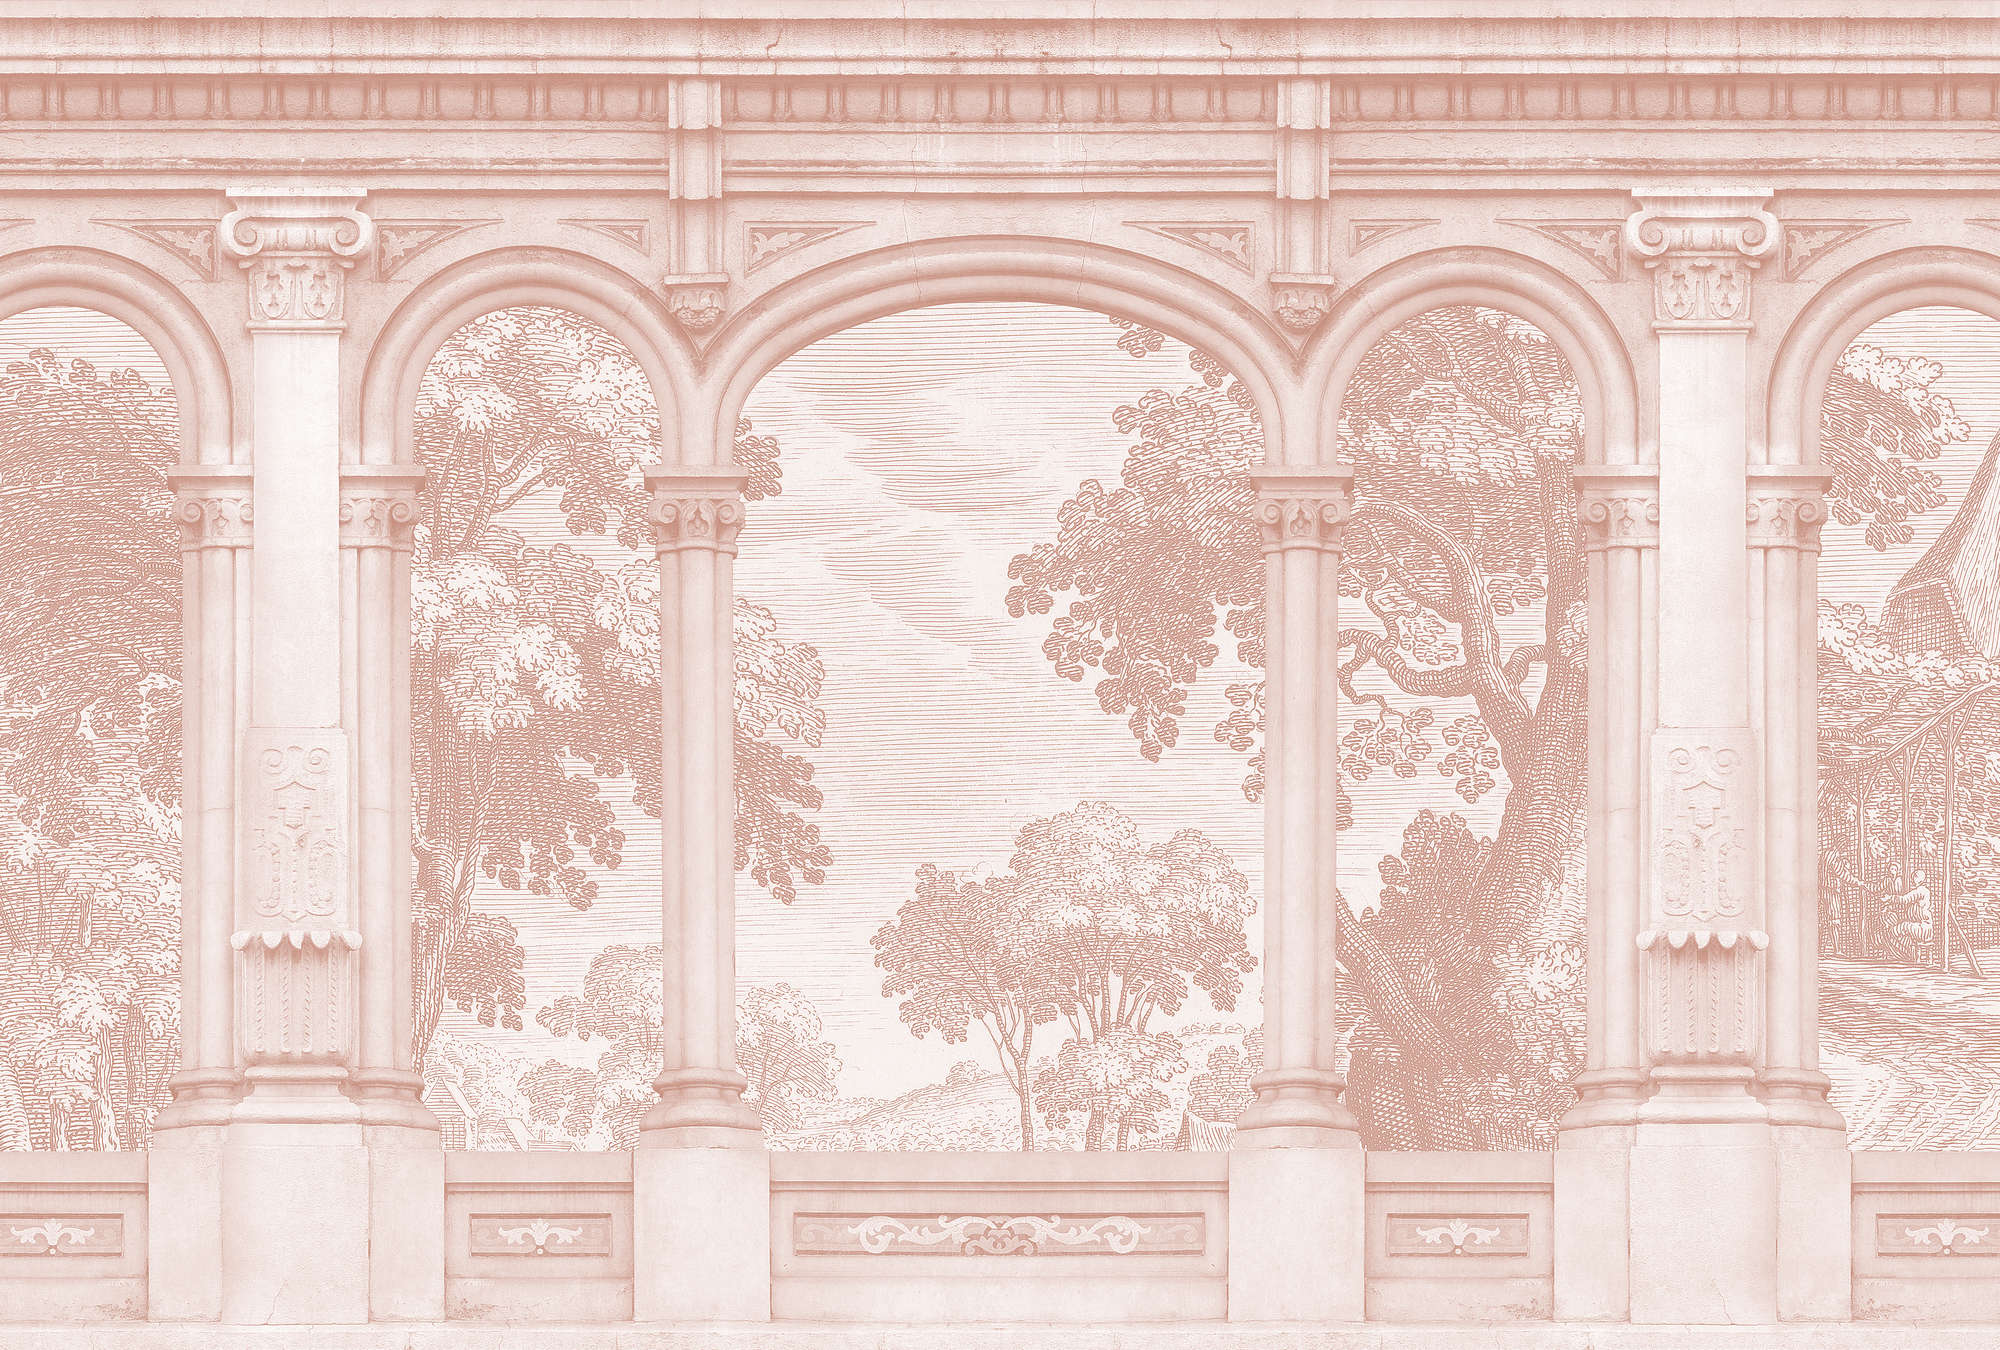             Roma 3 - Carta da parati rosa Design storico con finestra ad arco a tutto sesto
        